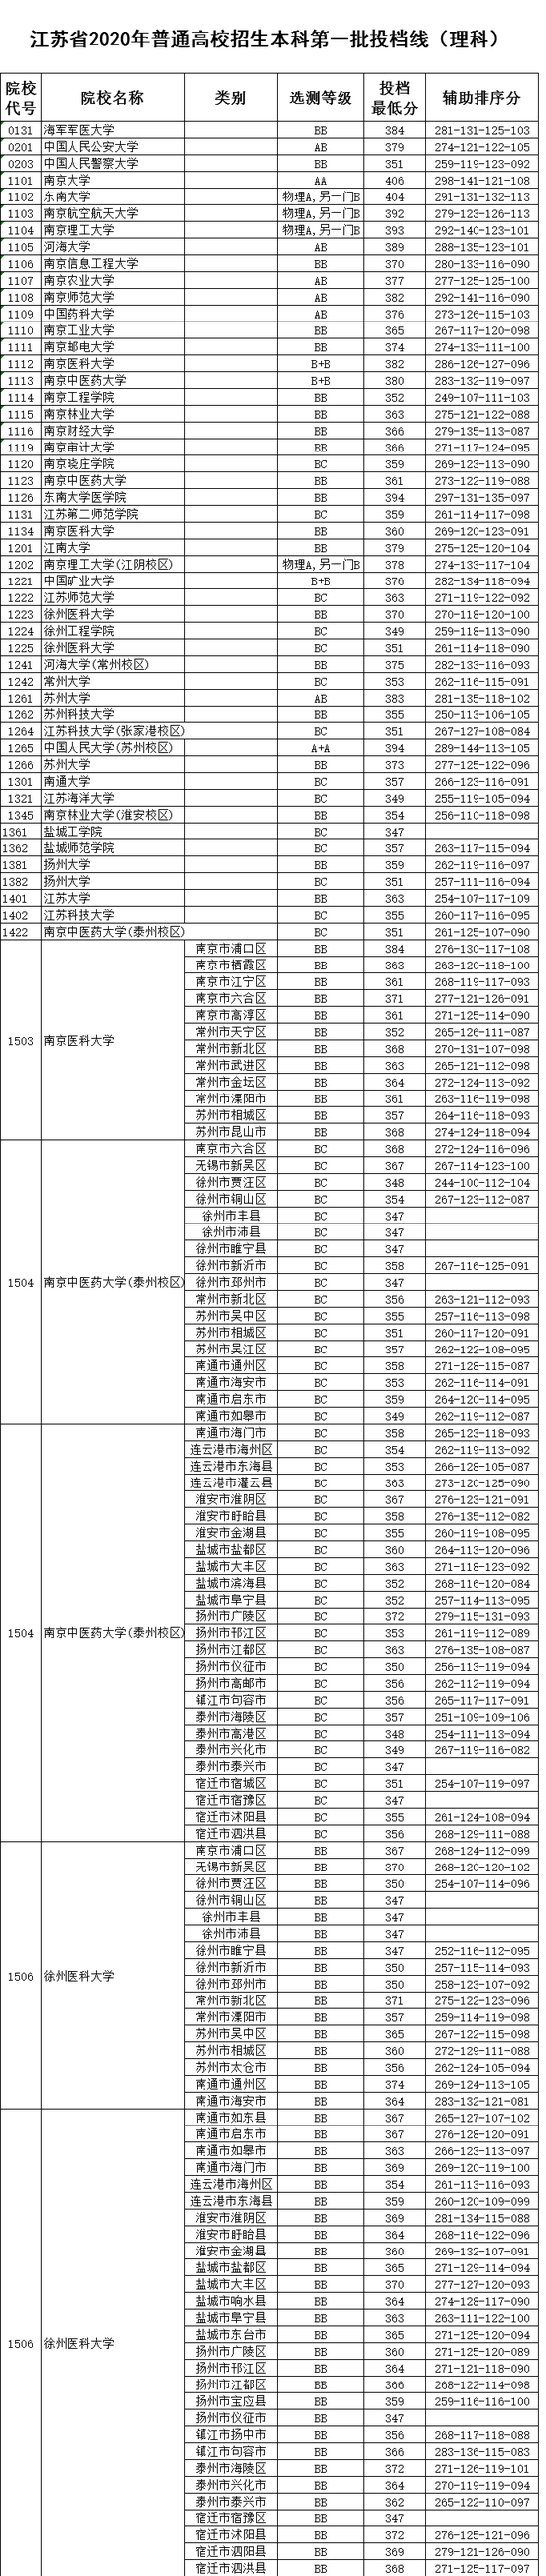 江苏2020单招学校排名_2020中国高考难度排名,第一不是江苏